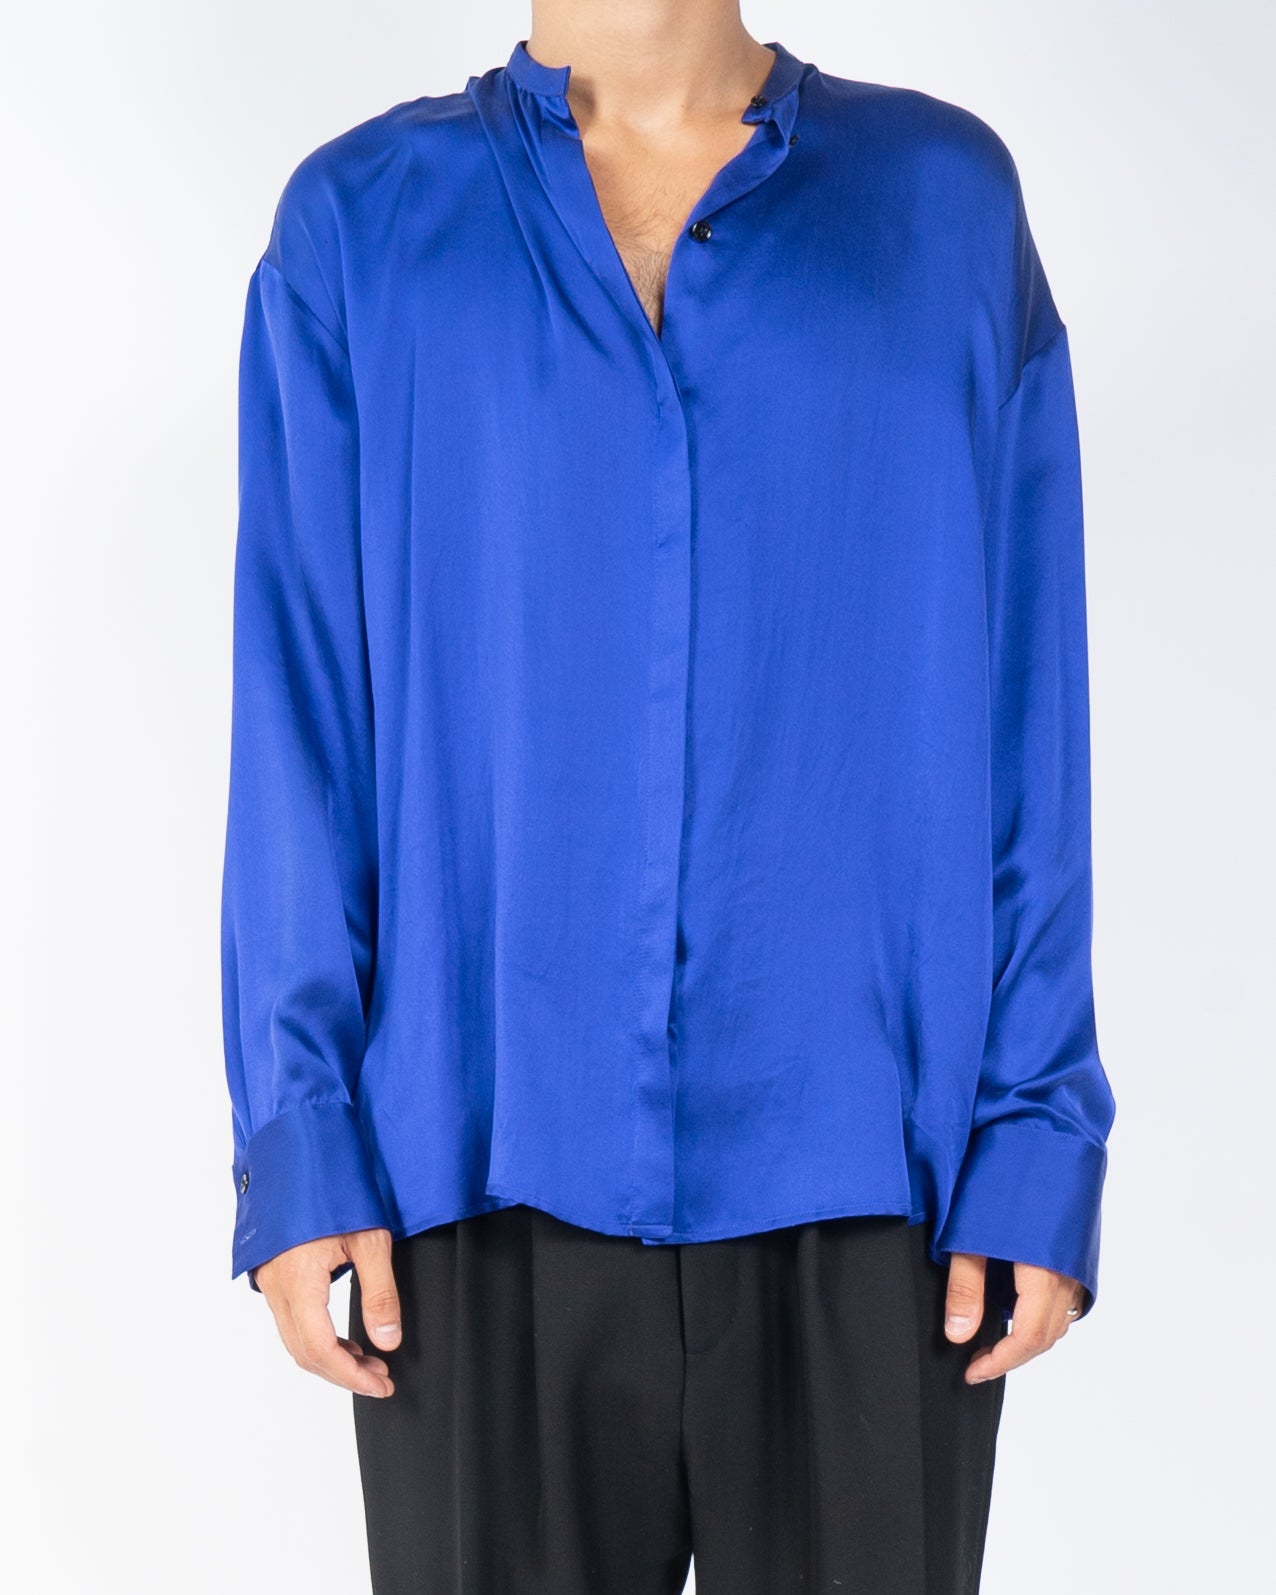 FW20 Royal Blue Dali Silk Shirt Sample